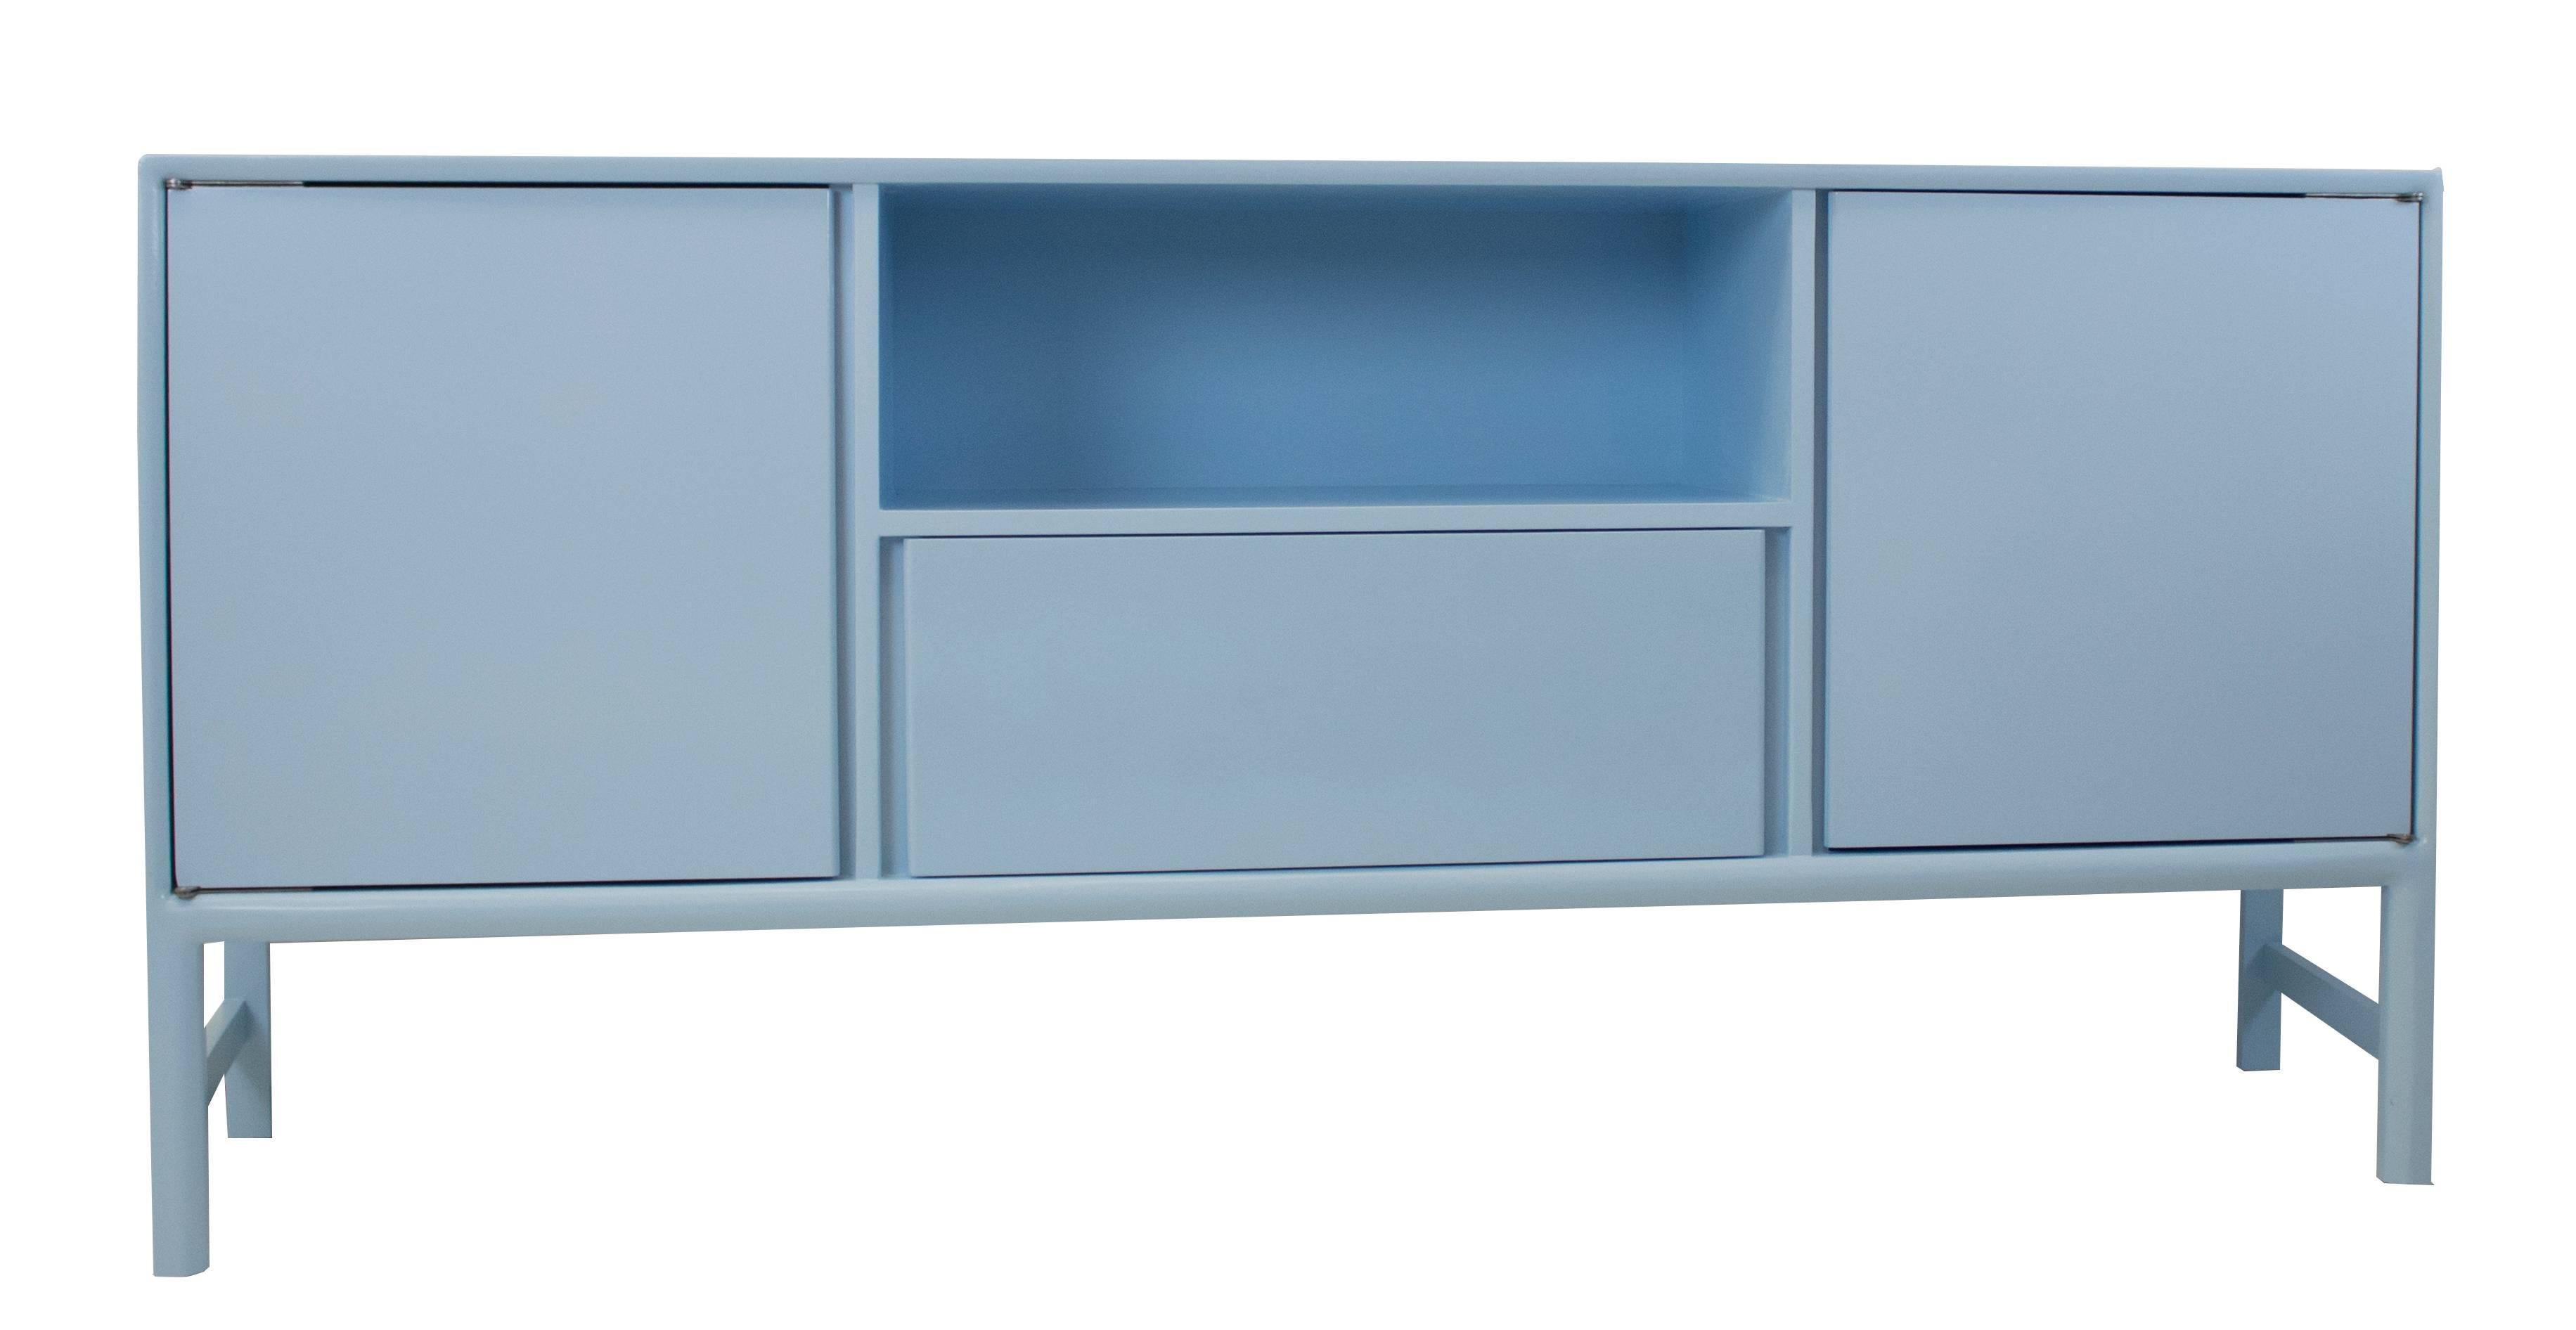 Dieses moderne, in Hochglanzpuderblau lackierte Sideboard verfügt über Schränke, eine Schublade und ein Fach / Regal. Die Seiten des Stücks sind nach innen gewinkelt. Die Grundfläche ist wie ein Bumerang geformt, mit einer feinen Spitze an der